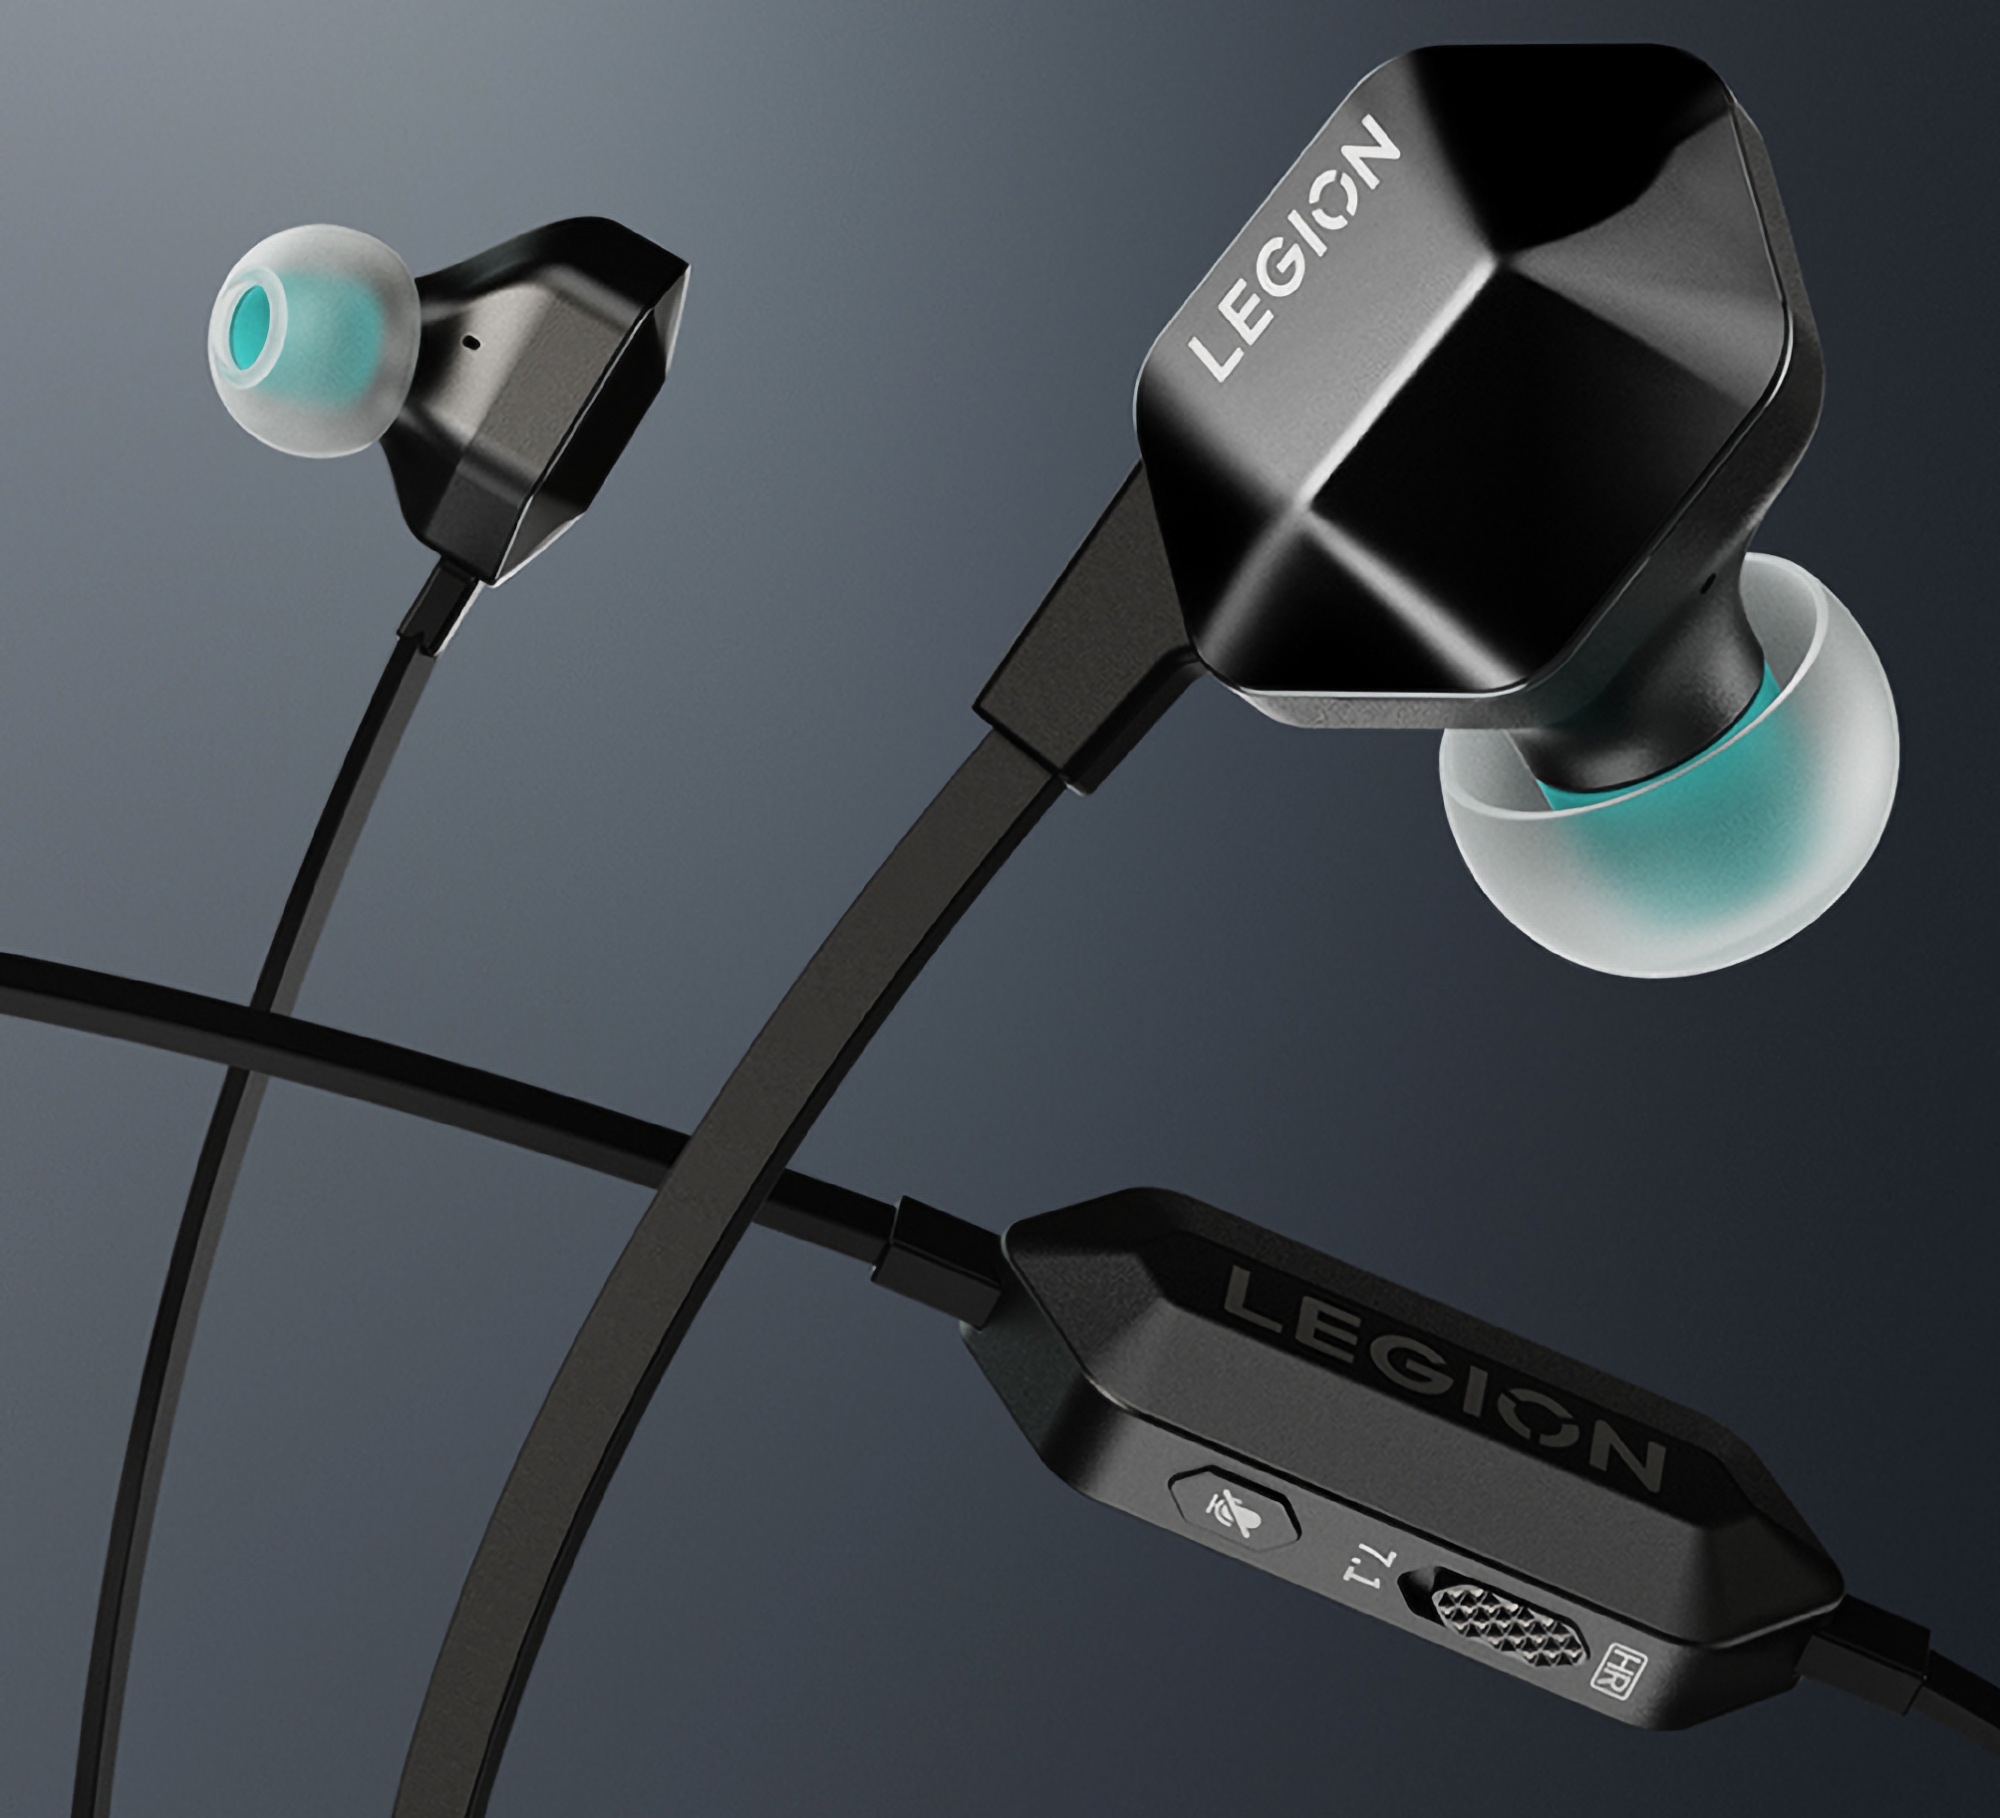 Lenovo kündigt Legion H7 an: Gaming-Kopfhörer mit 7.1-Surround-Sound-Unterstützung und USB Type-C-Anschluss für 35 US-Dollar